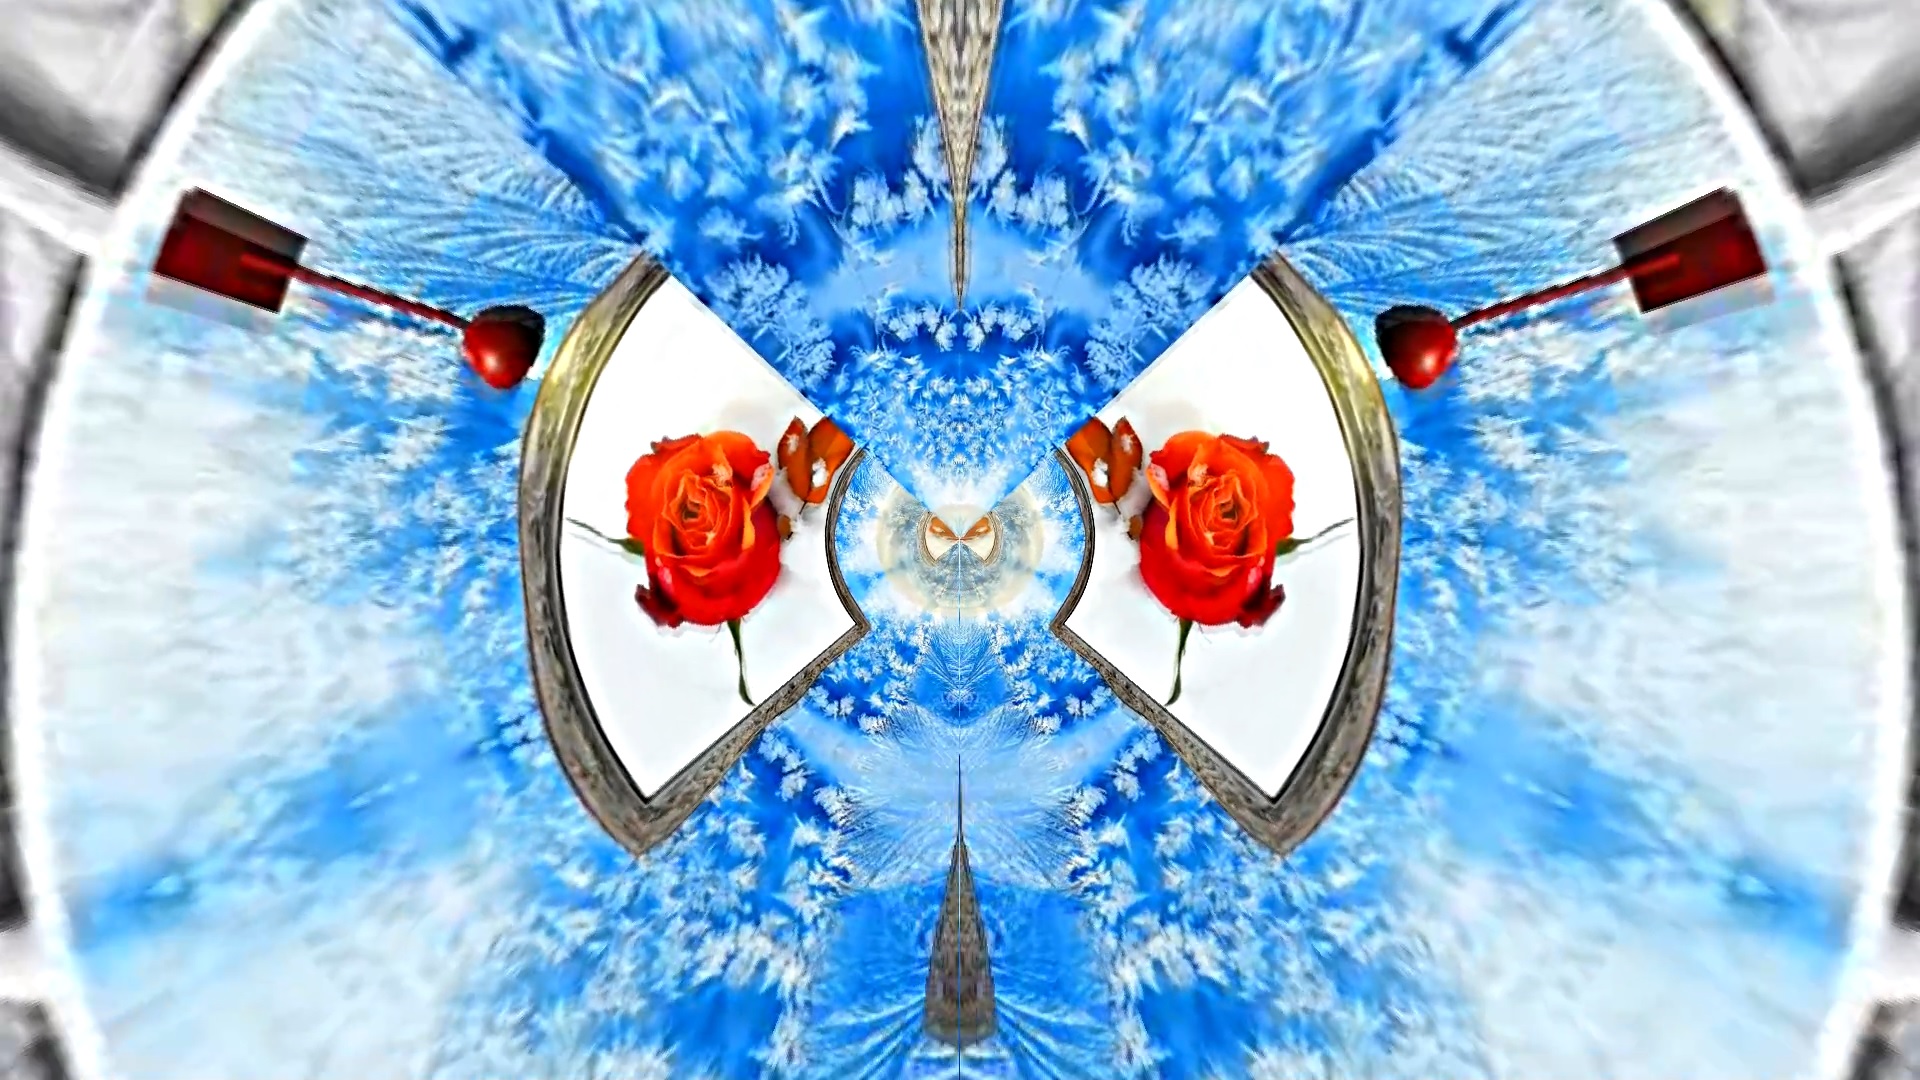 Картины Розы на Снегу в Ледяной Галерее 5 от Киностудии Мудрого Кота Тимофея!